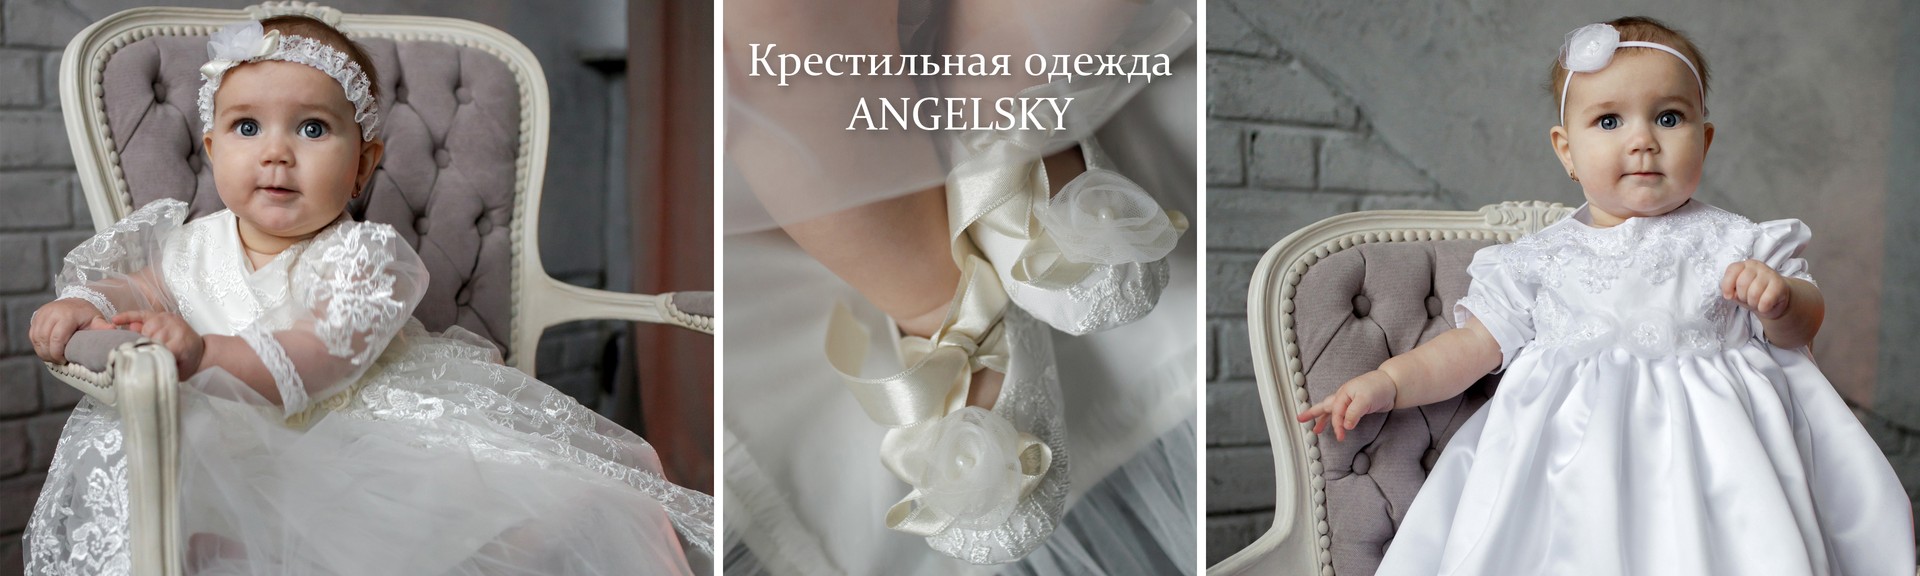 Крестильная одежда Angelsky